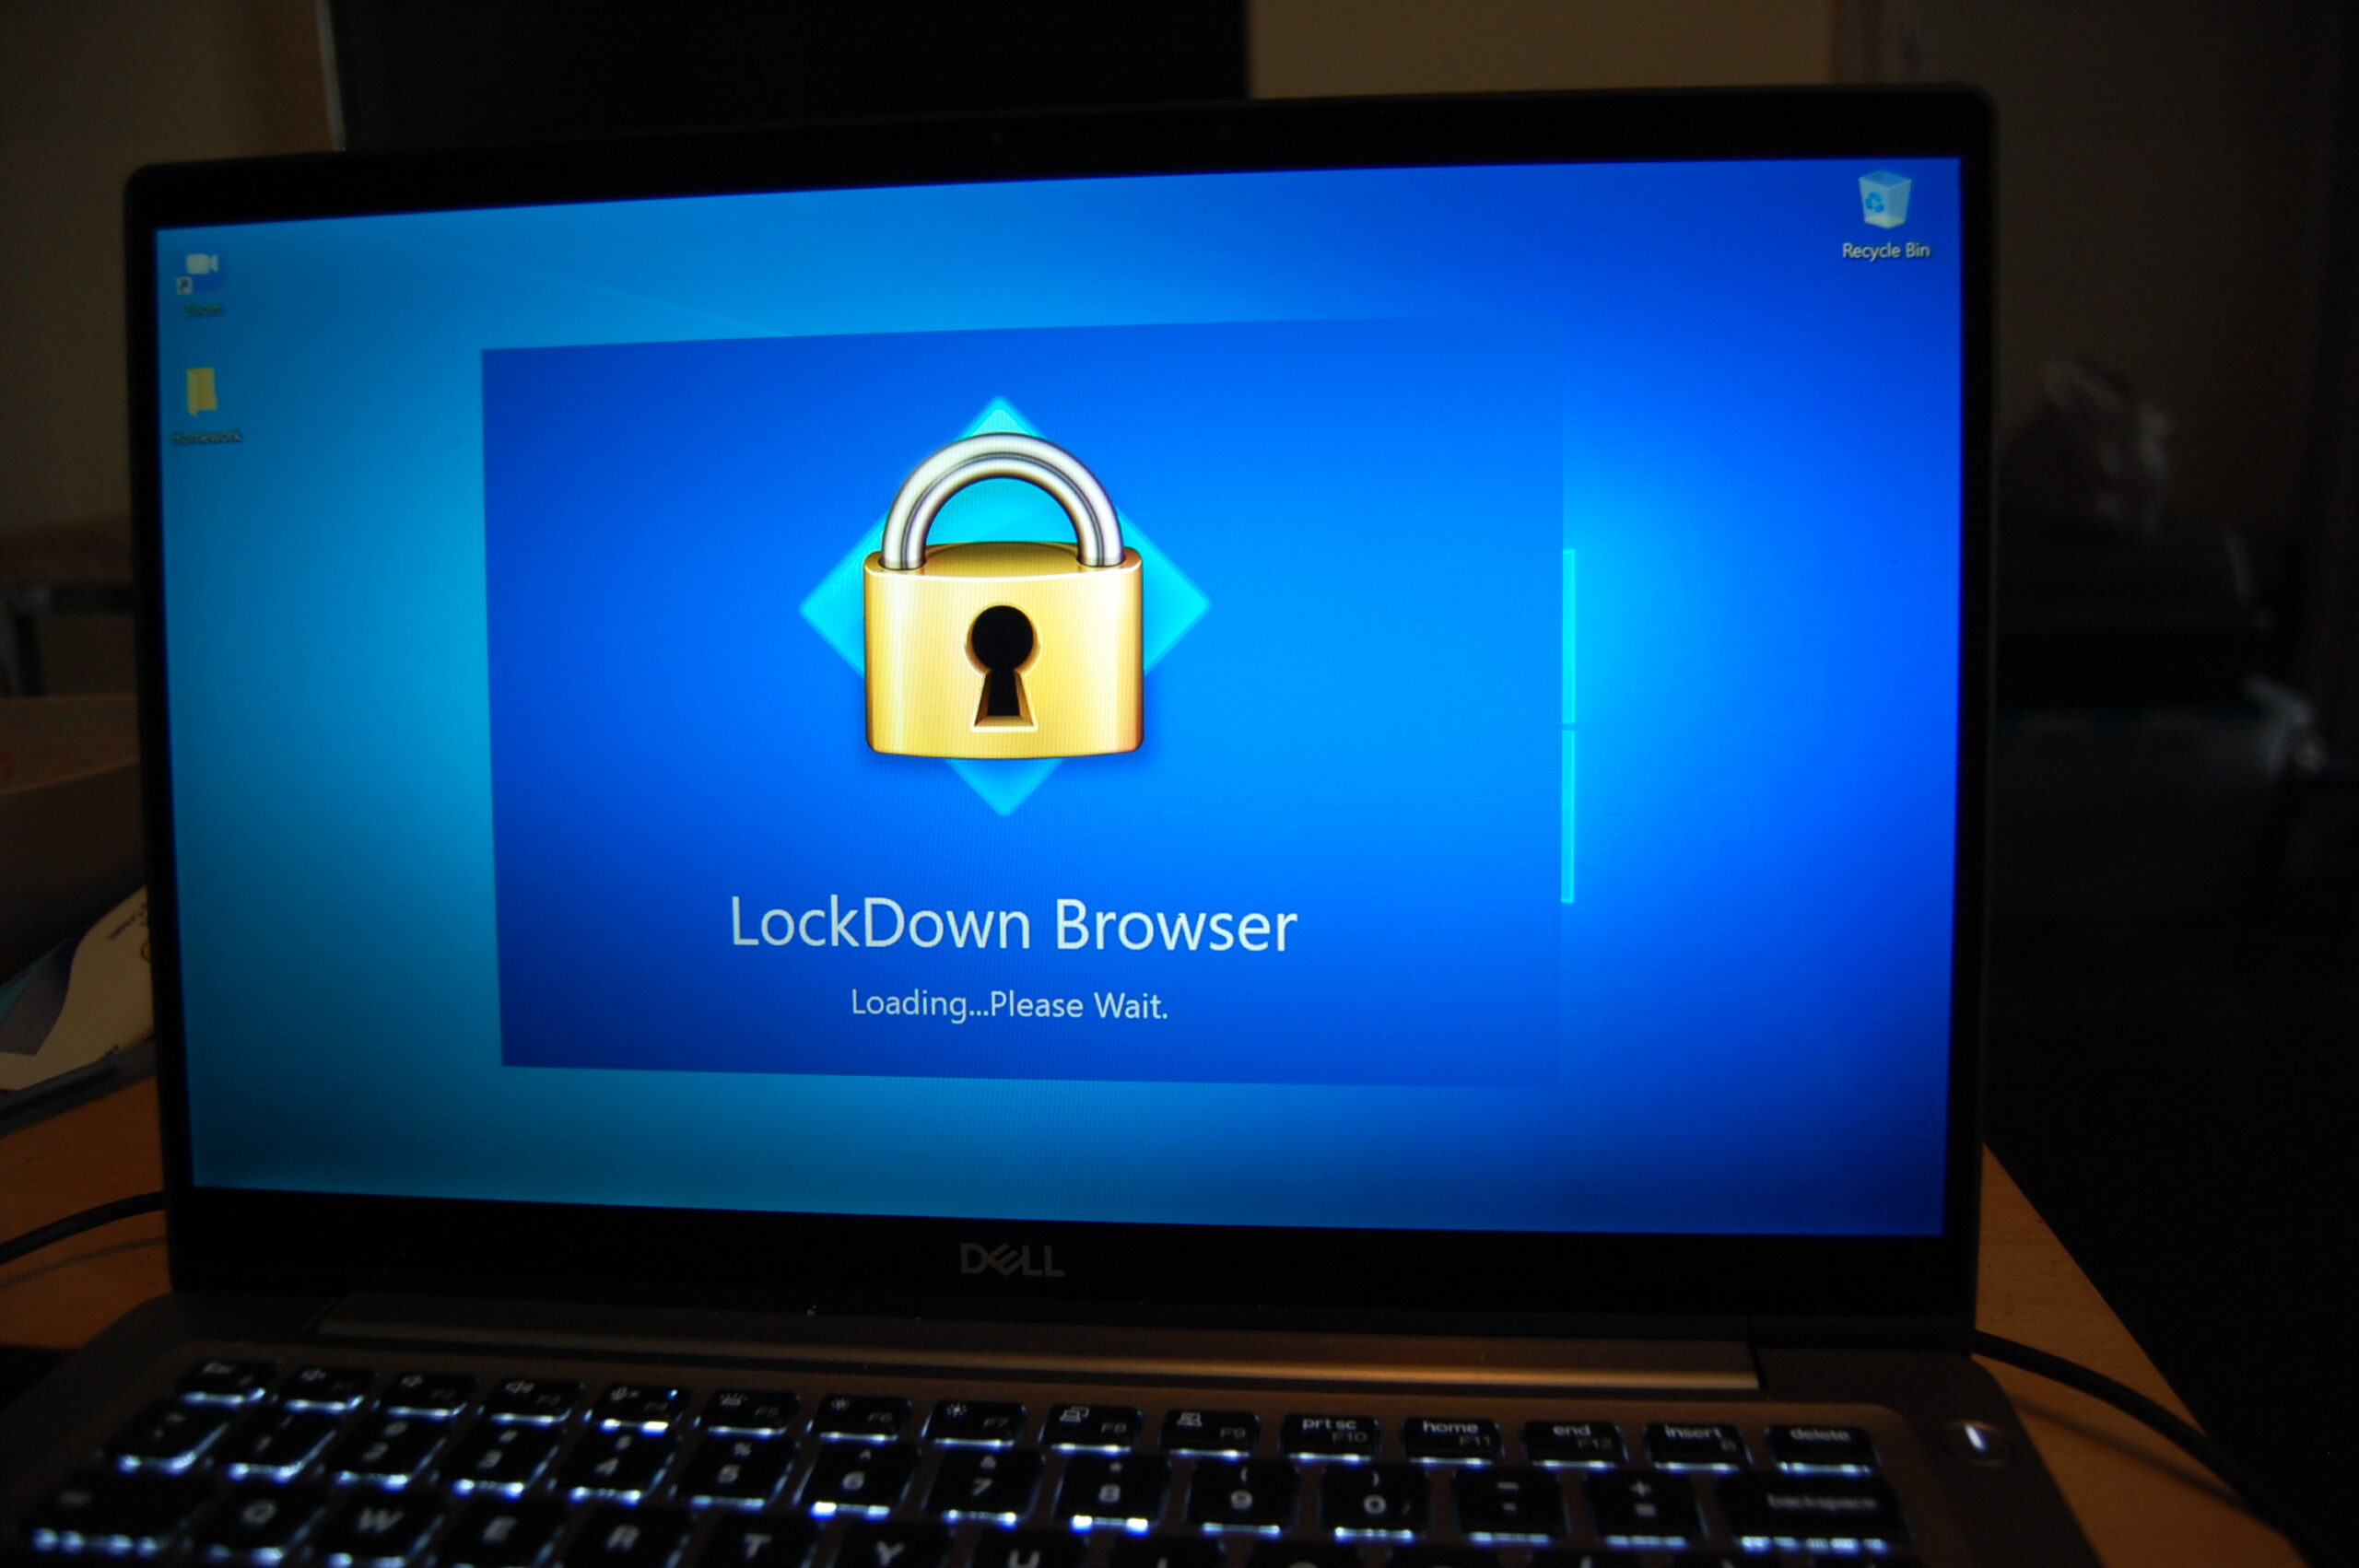 respondus lockdown browser update